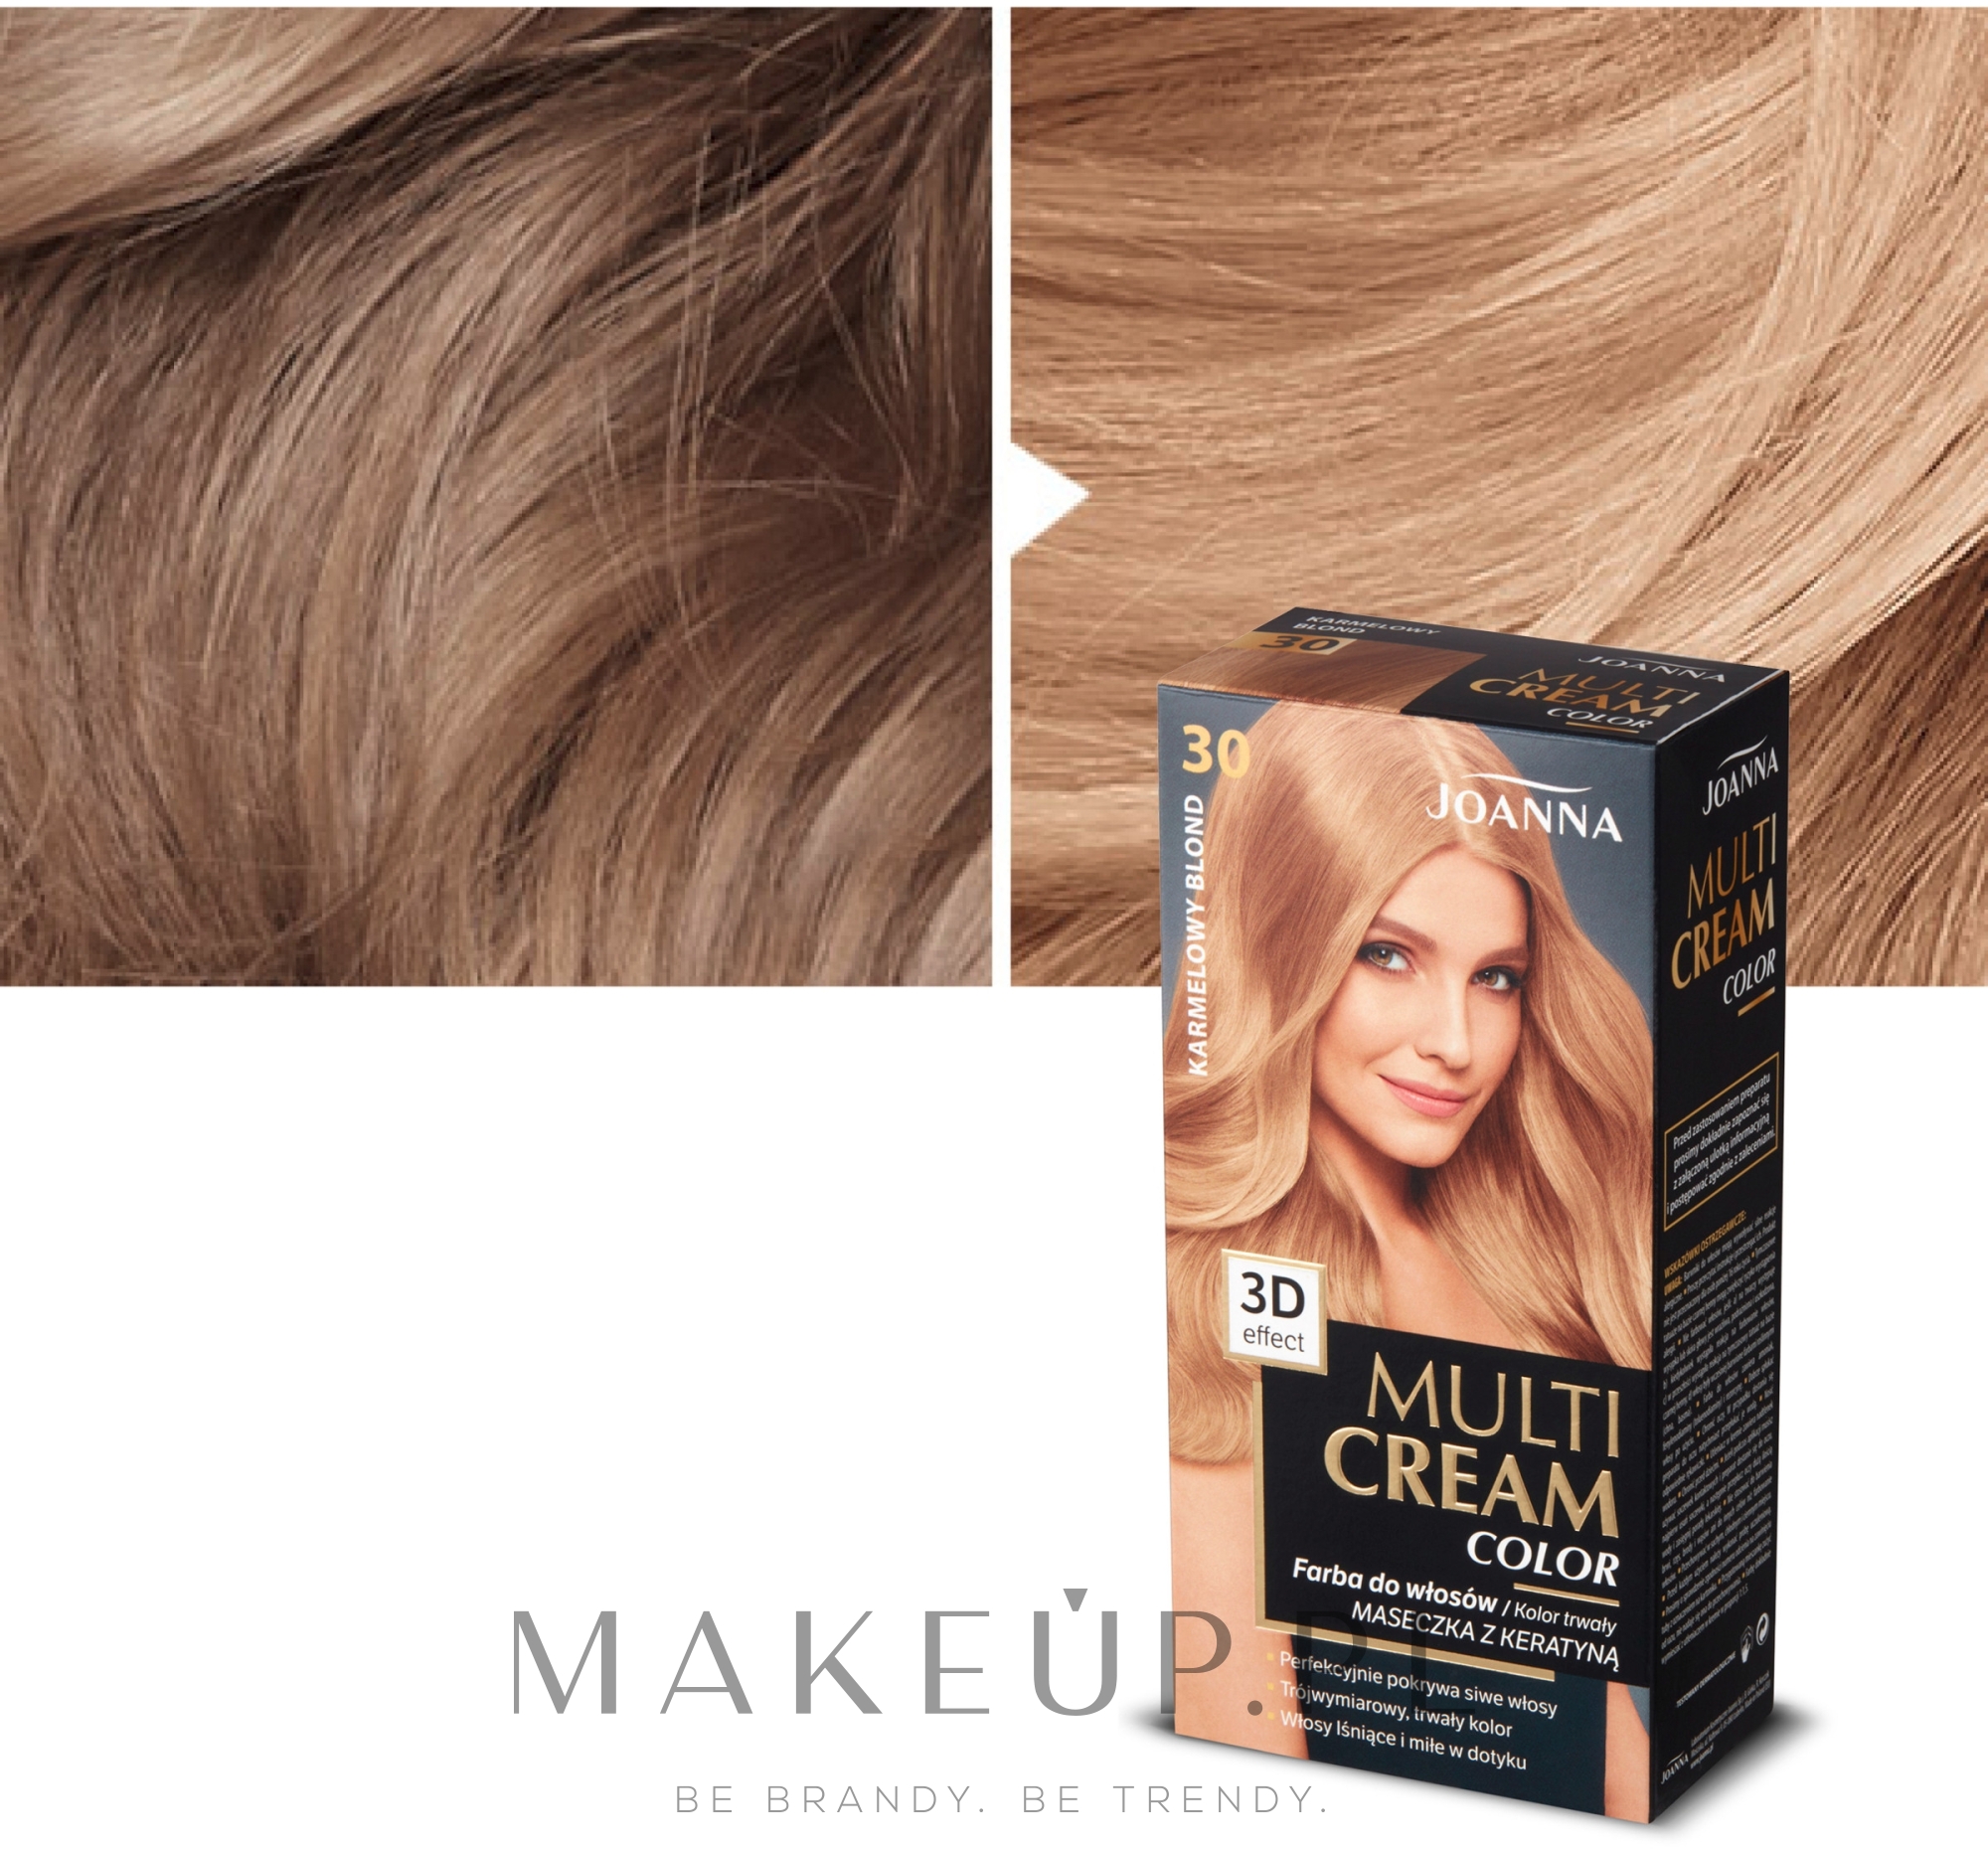  Joanna Multi Cream Color - Trwała farba do włosów — Zdjęcie 30 - Karmelowy blond